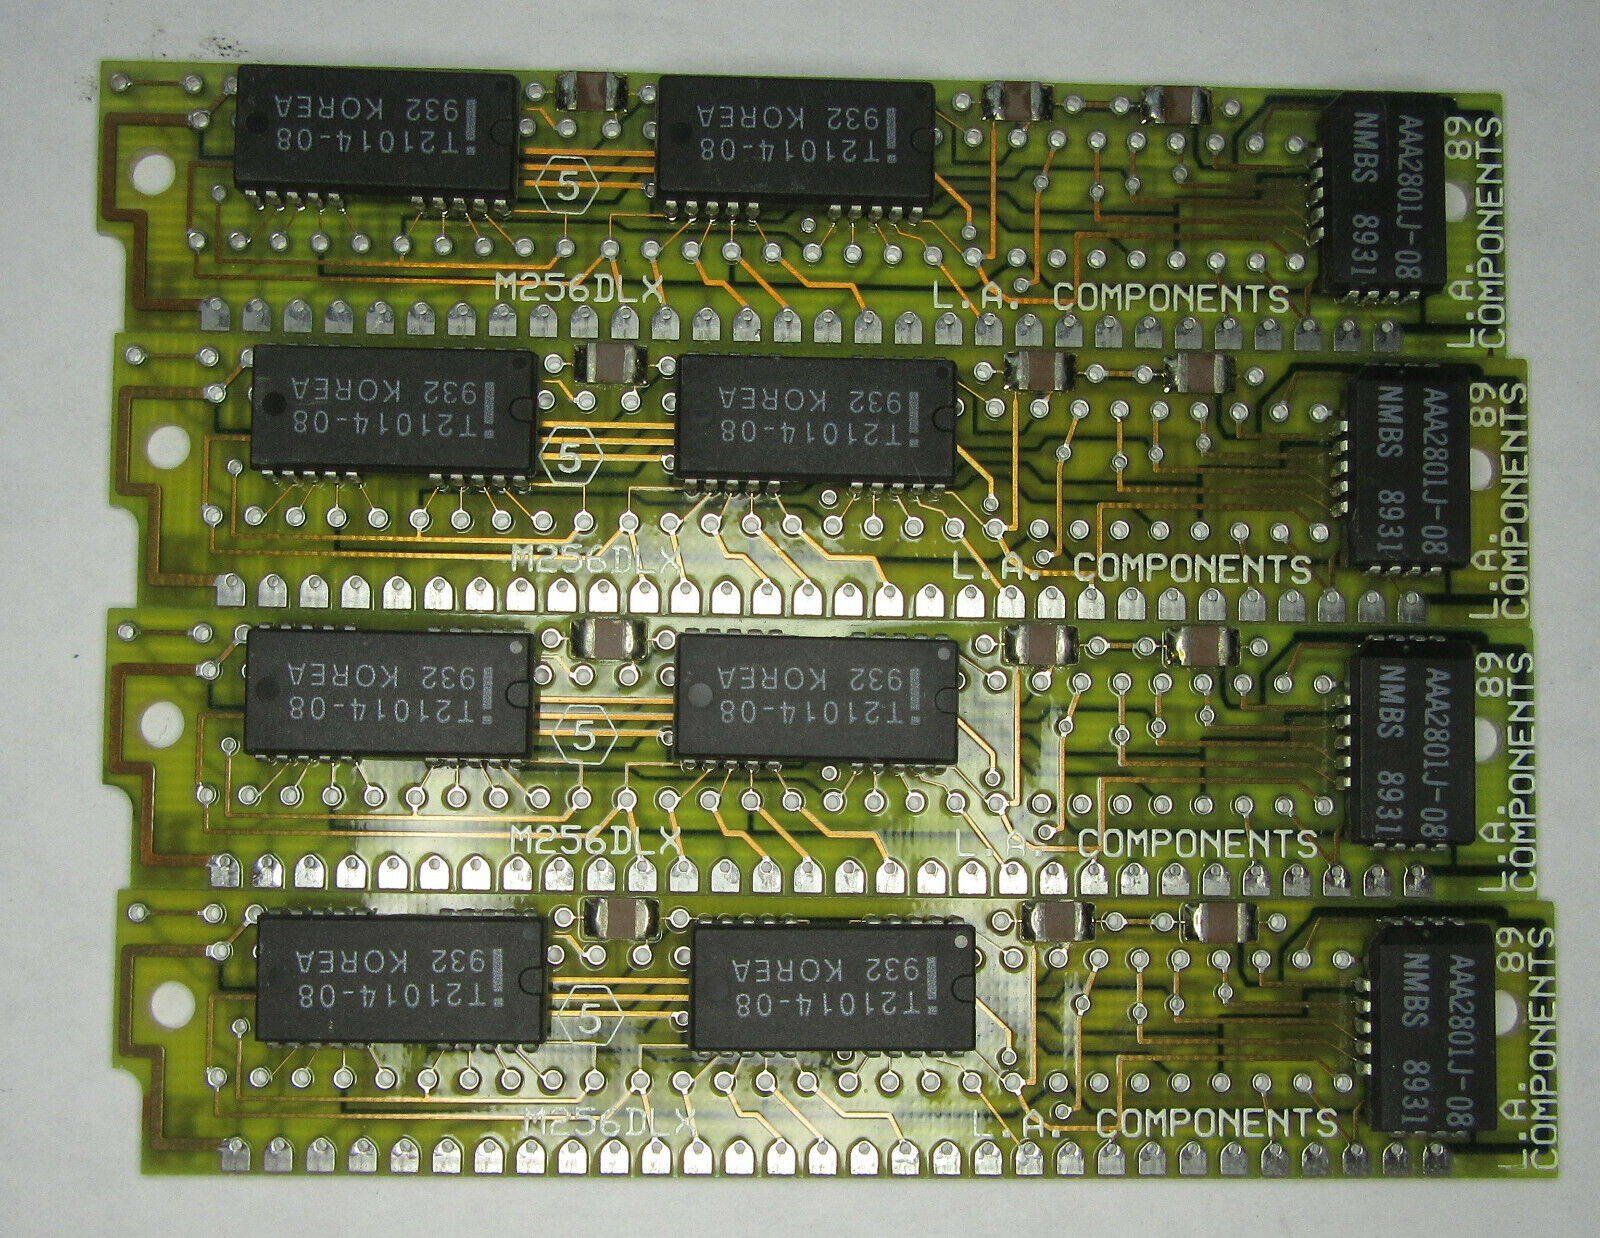 Lot of 4Pcs RARE Vintage L.A. Components M256DLX Memory Module